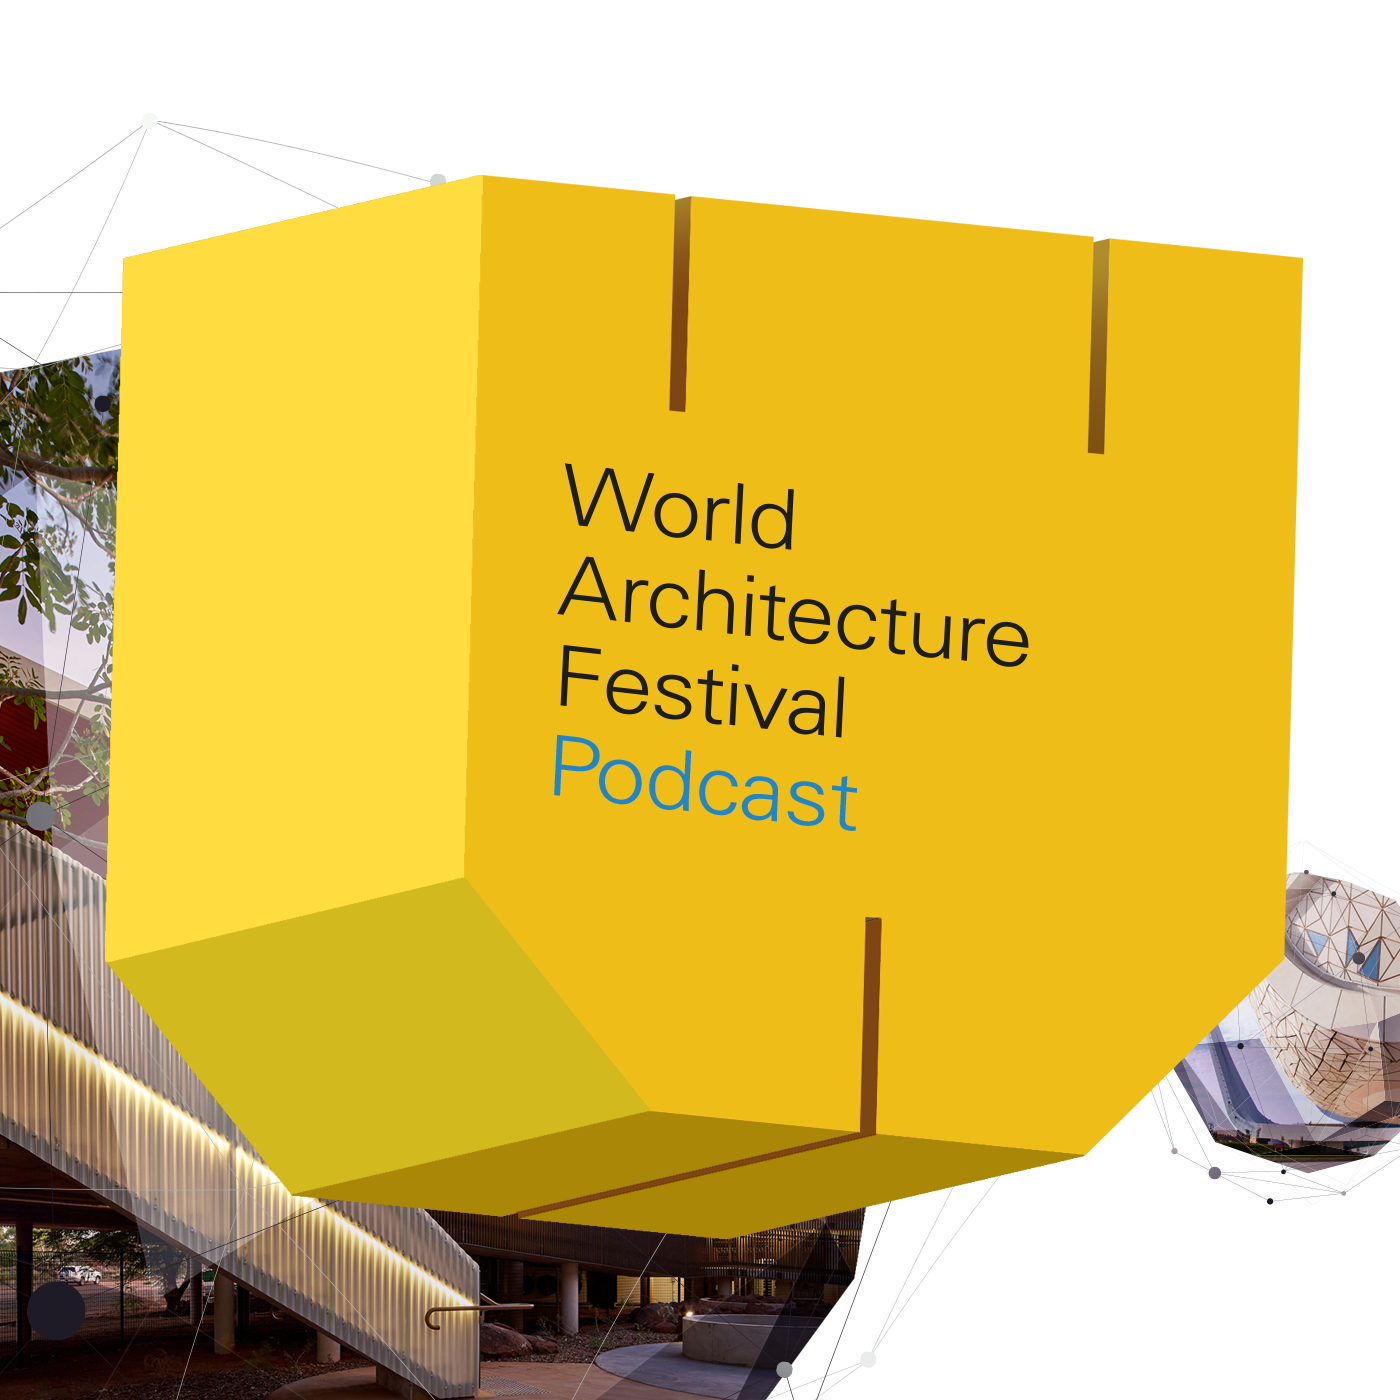 World Architecture Festival Podcast